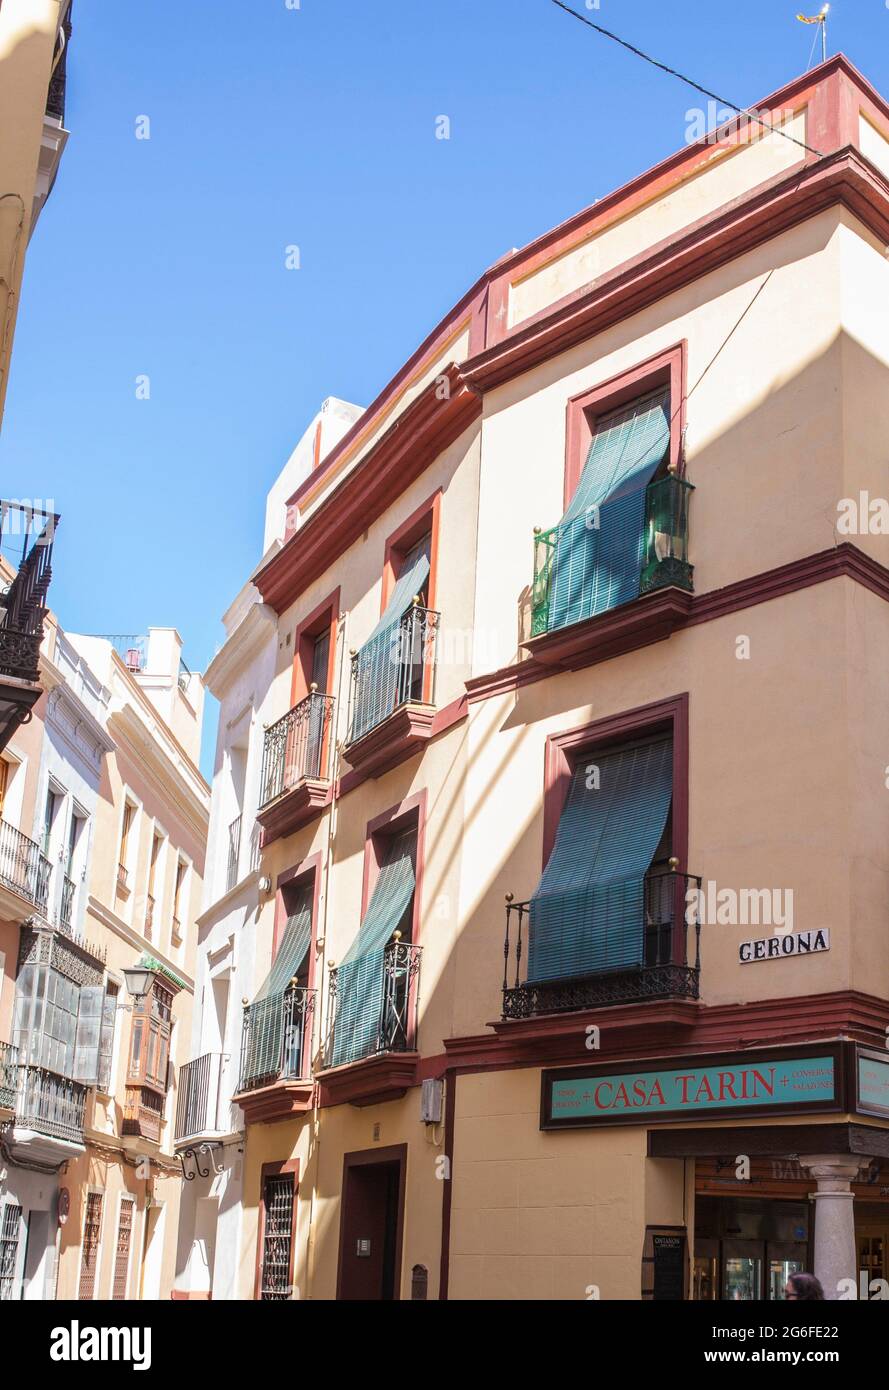 Caminando por la estrecha calle del barrio de Macarena, distrito histórico de Sevilla, España. Foto de stock